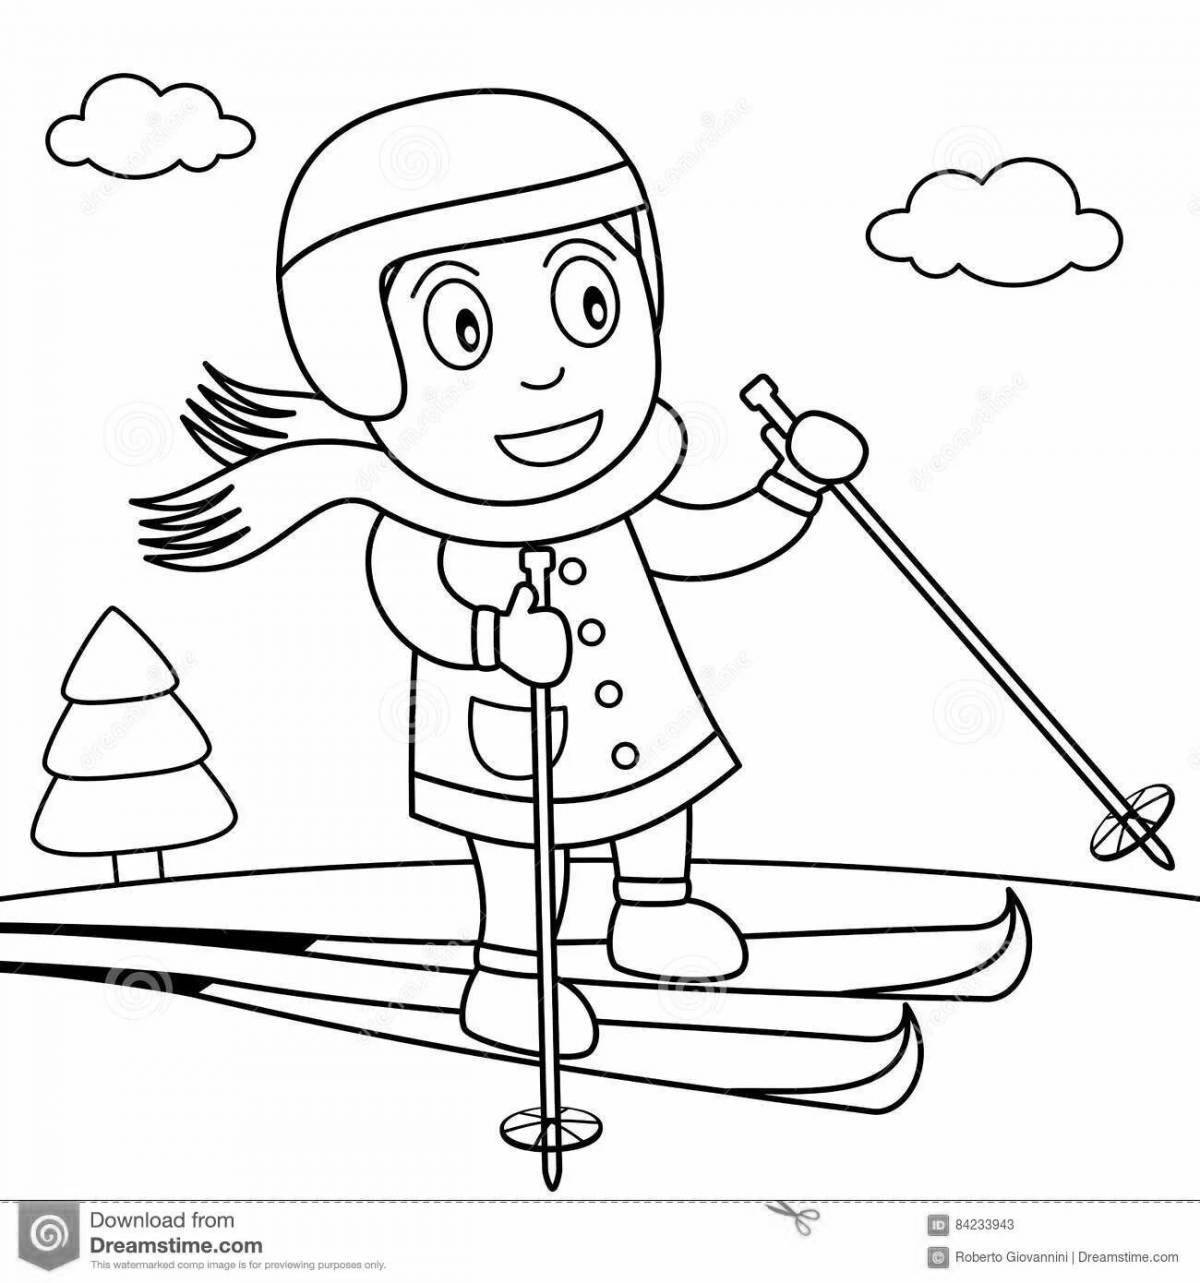 Яркая раскраска лыжника для дошкольников